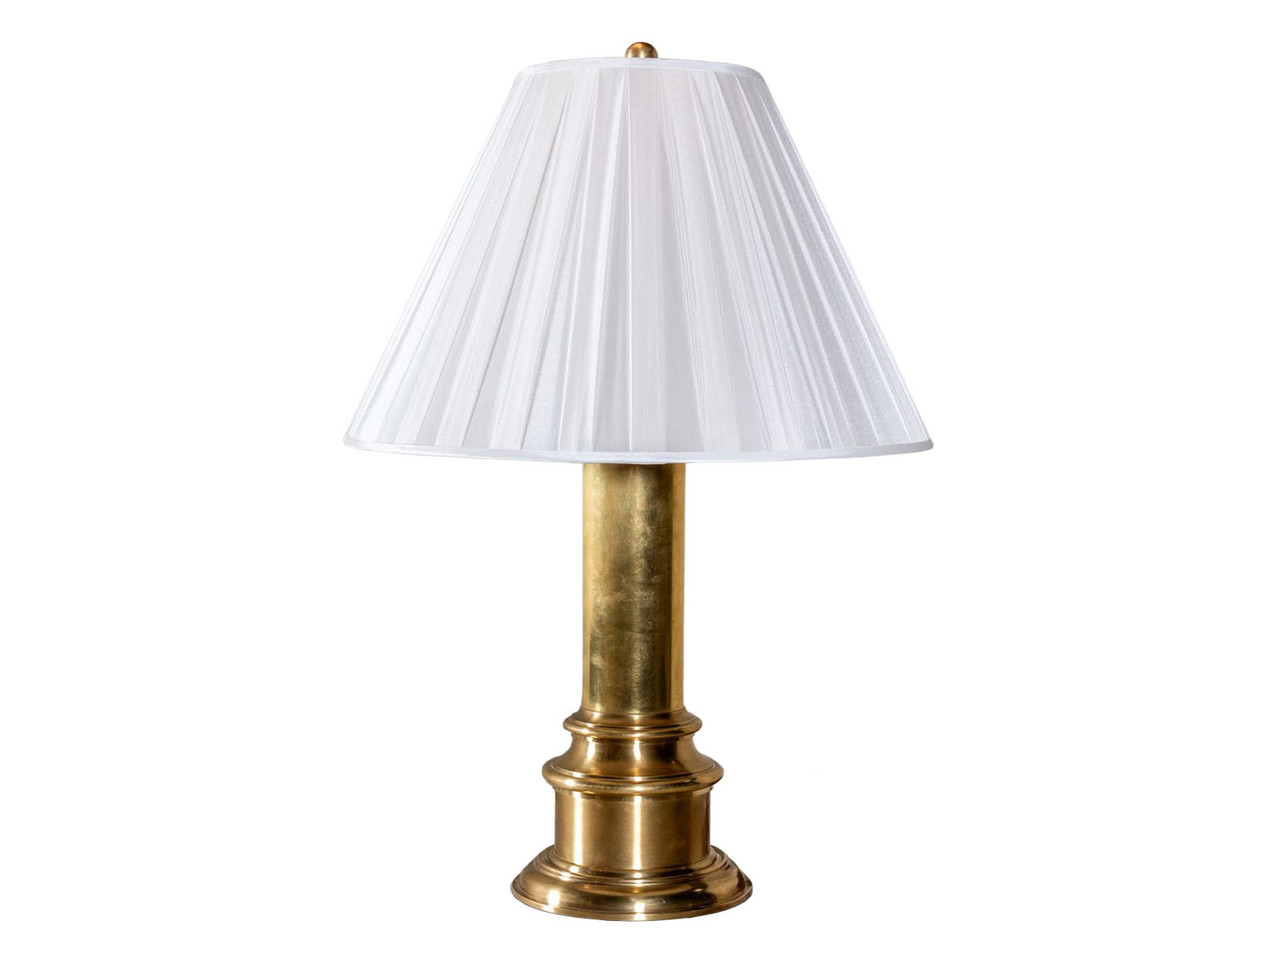 VINTAGE BRASS DESK LAMP - REVIVAL HOME